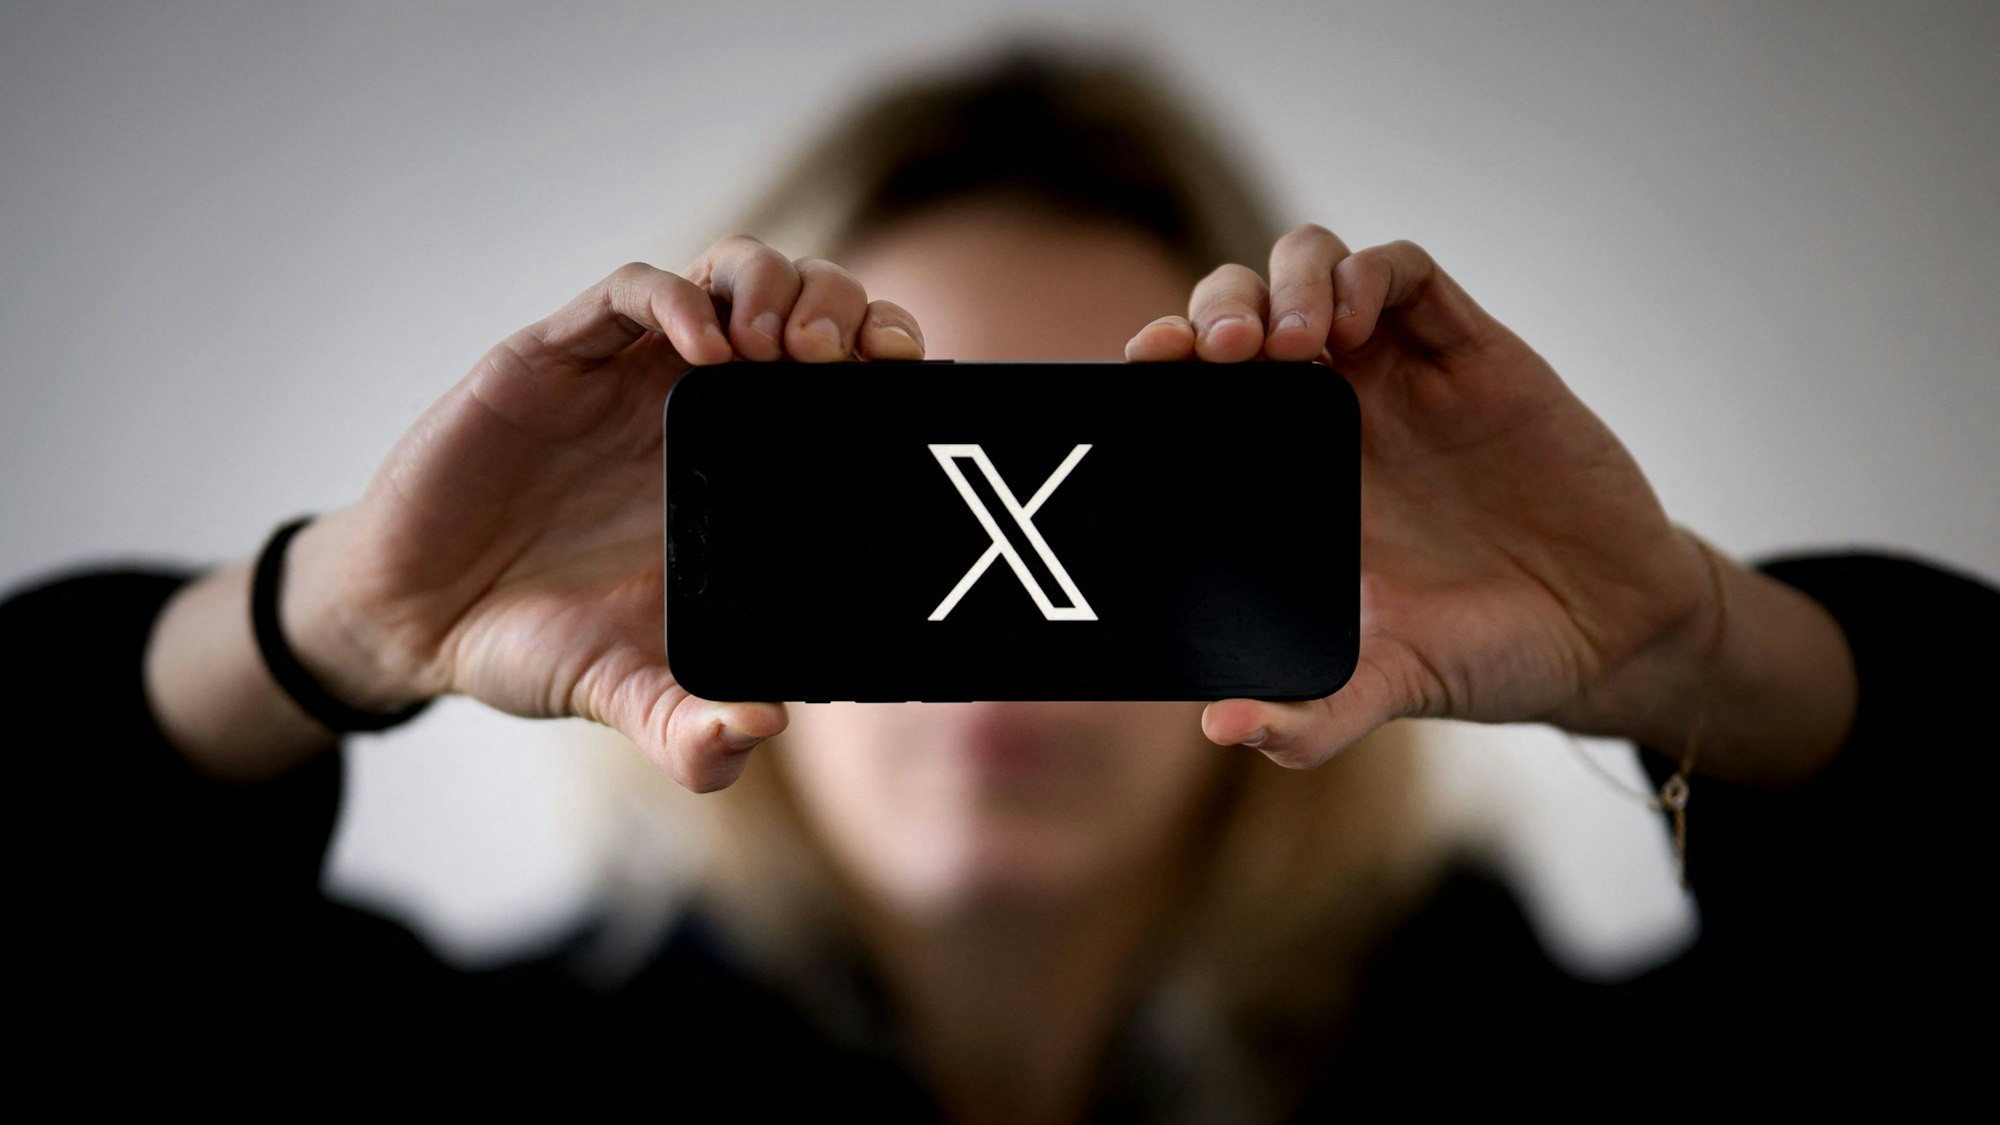 Eine Frau hält ein Smartphone in den Händen, auf dem das Logo von X zu sehen ist. (Symbolbild)